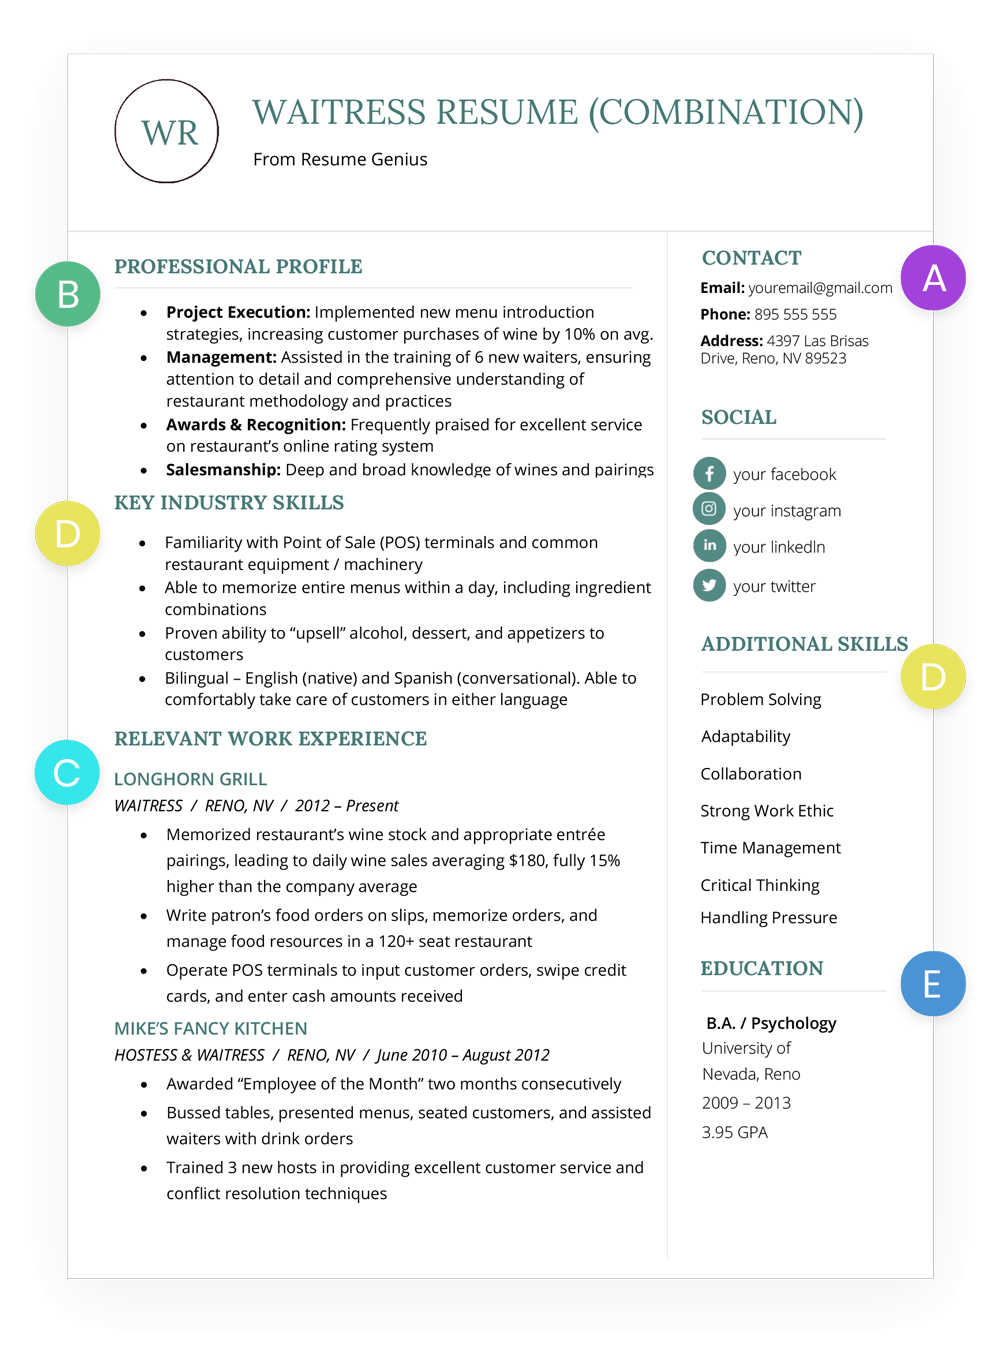 How To Write A Good Resume Htw Combination Waitress Resume Example how to write a good resume|wikiresume.com